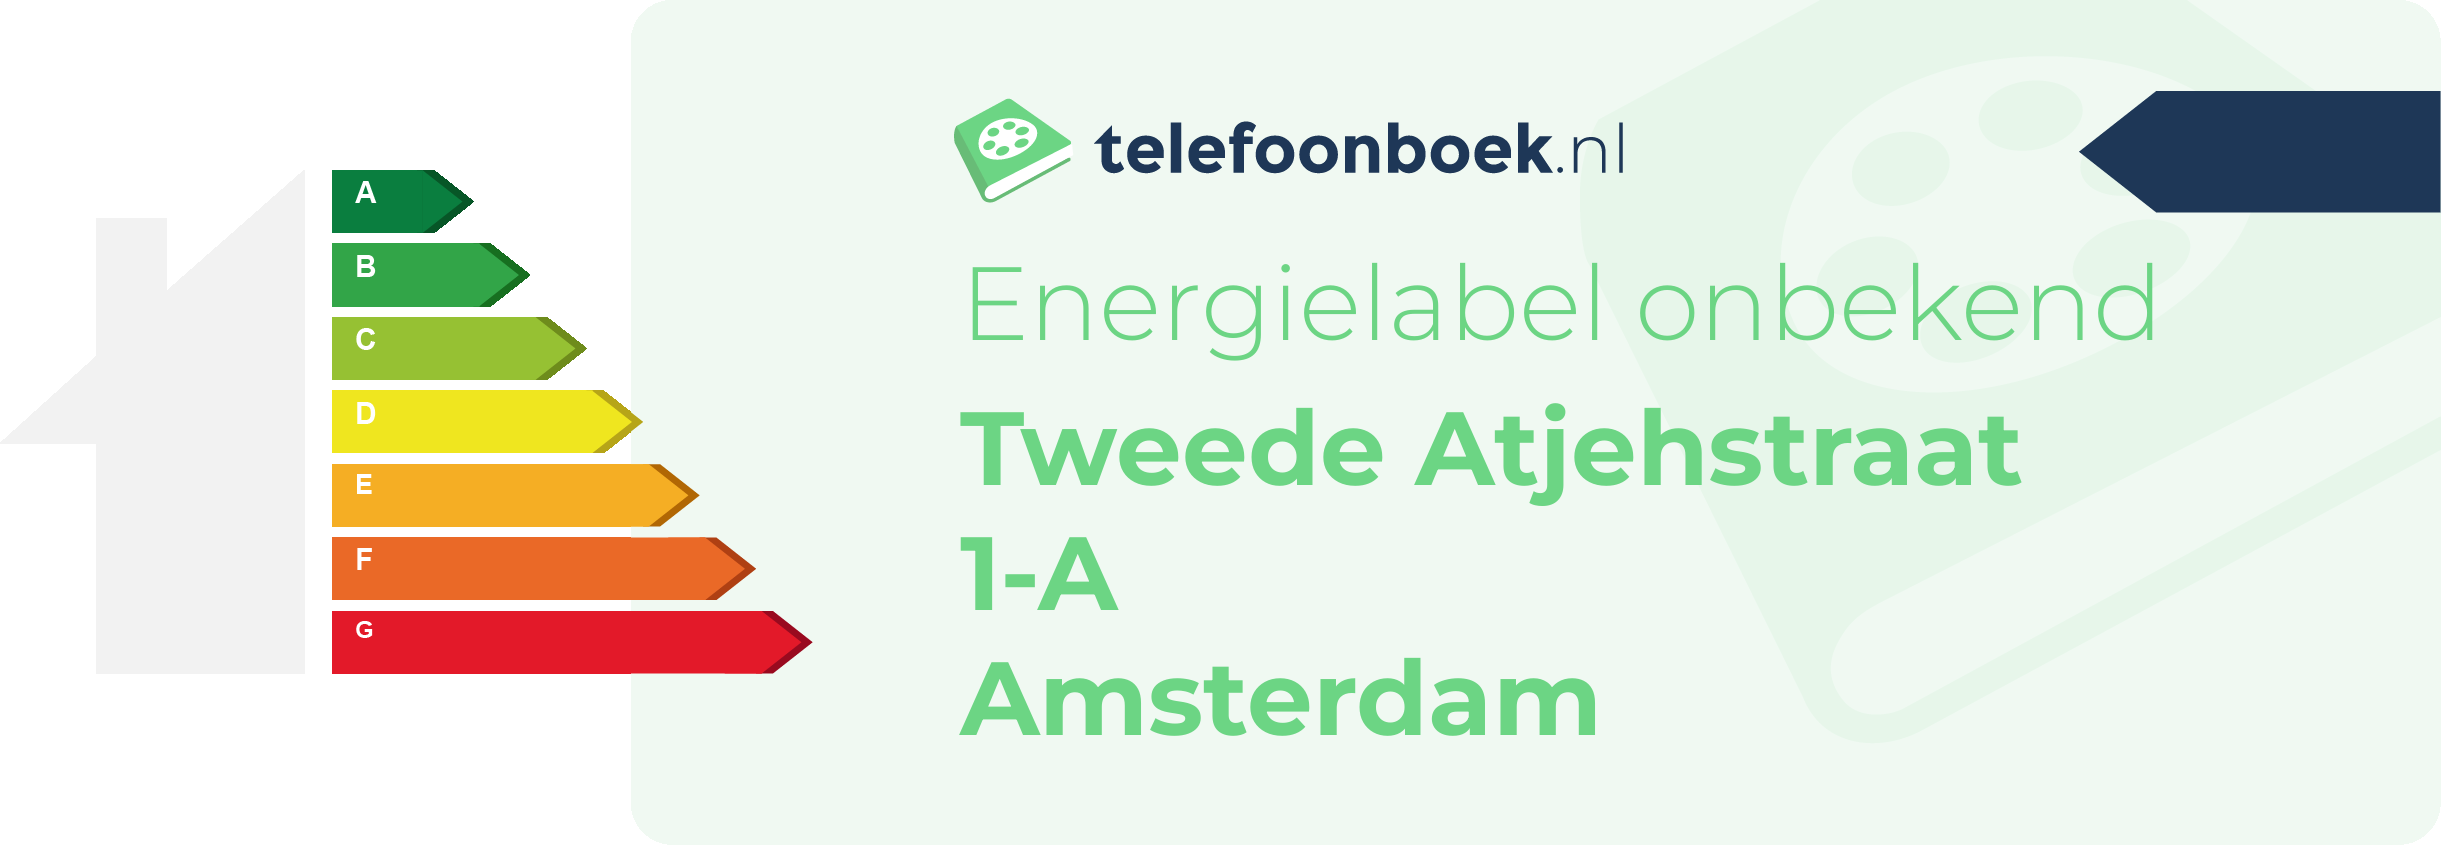 Energielabel Tweede Atjehstraat 1-A Amsterdam